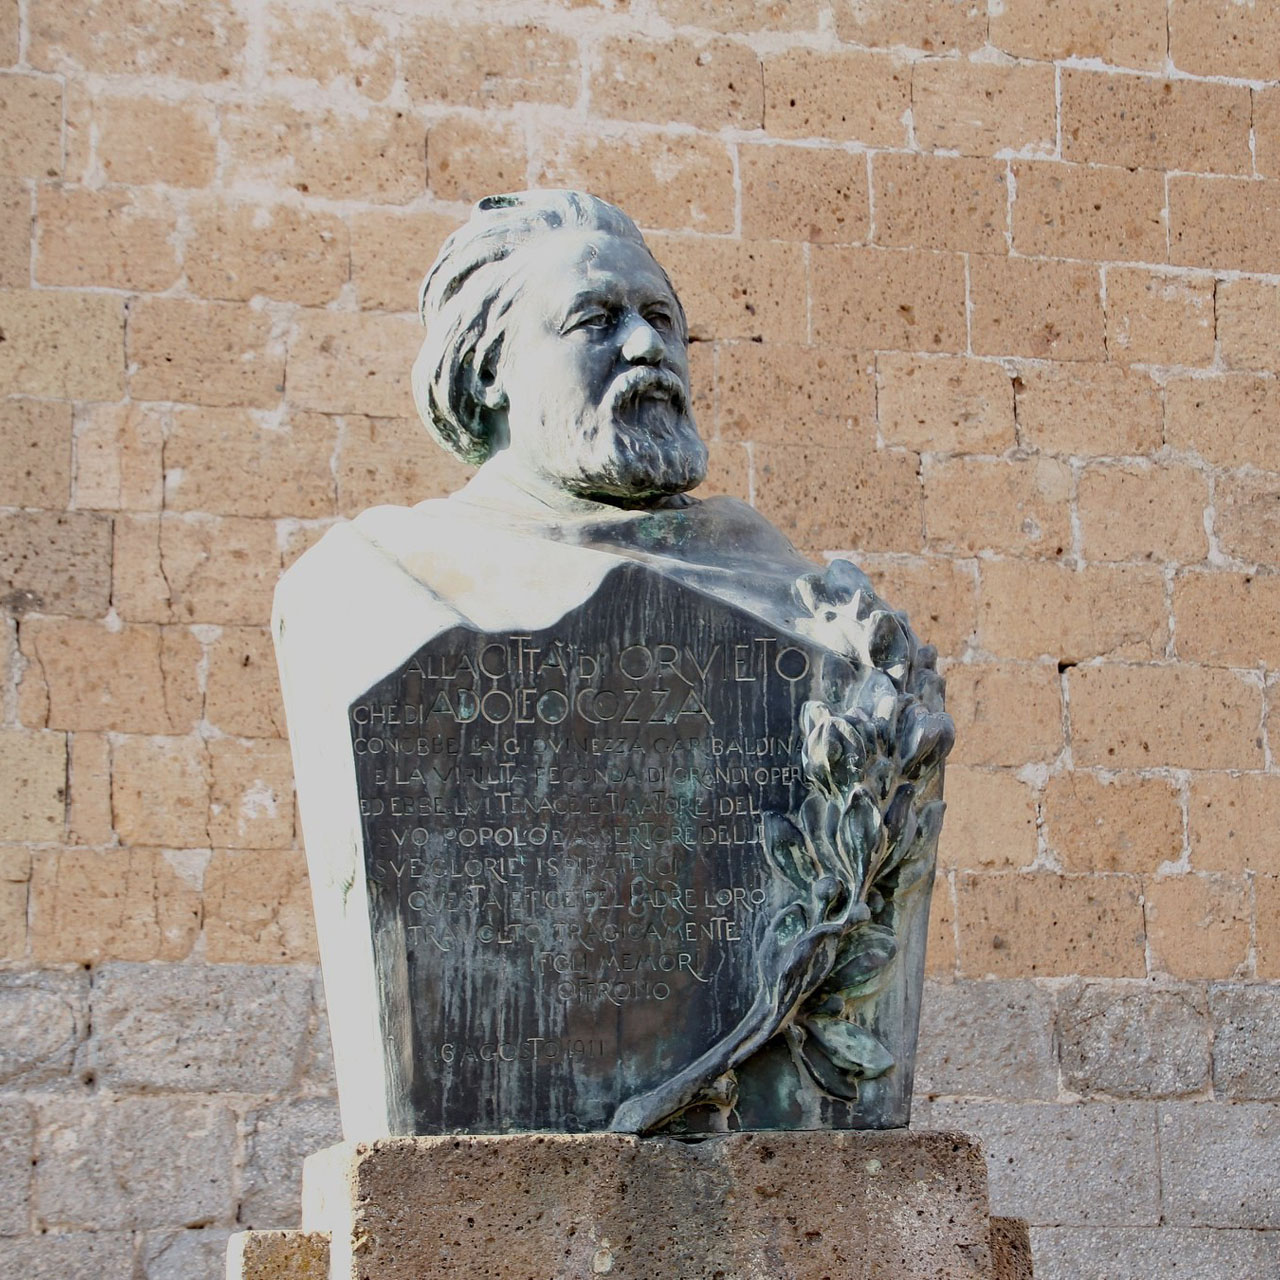 Busto-ritratto di Adolfo Cozza posto ad Orvieto